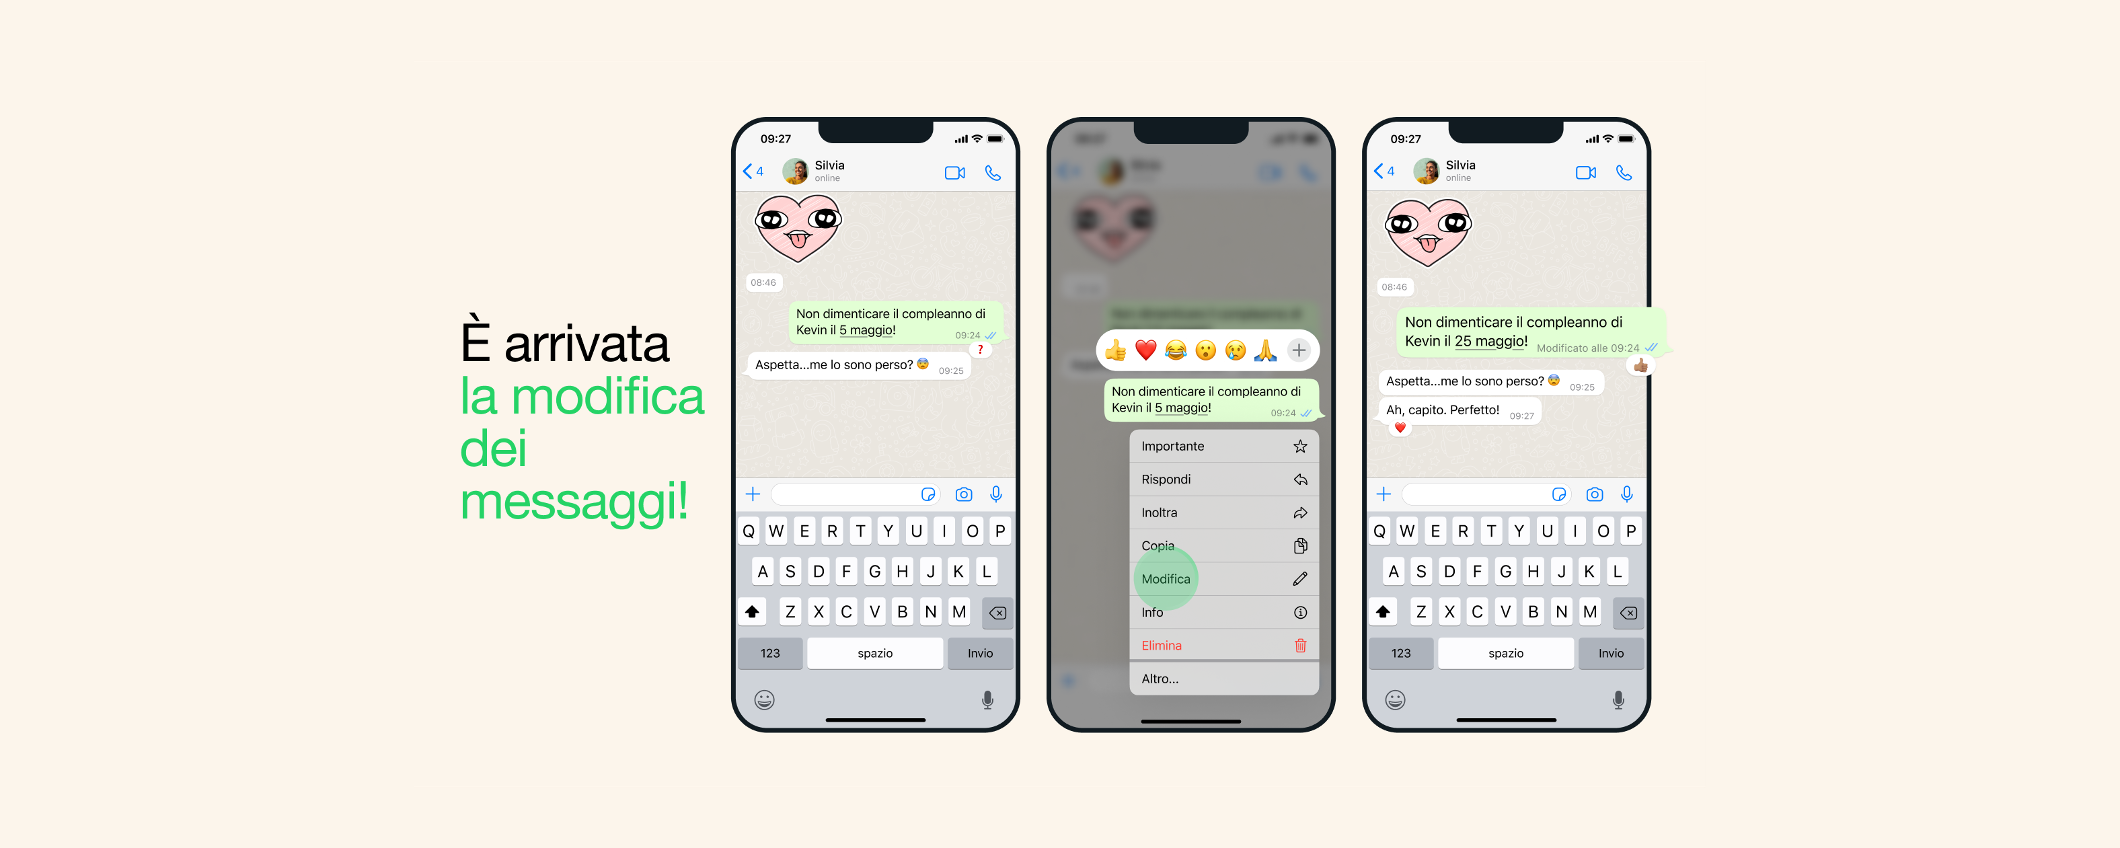 WhatsApp: modifica dei messaggi disponibile UFFICIALMENTE per tutti